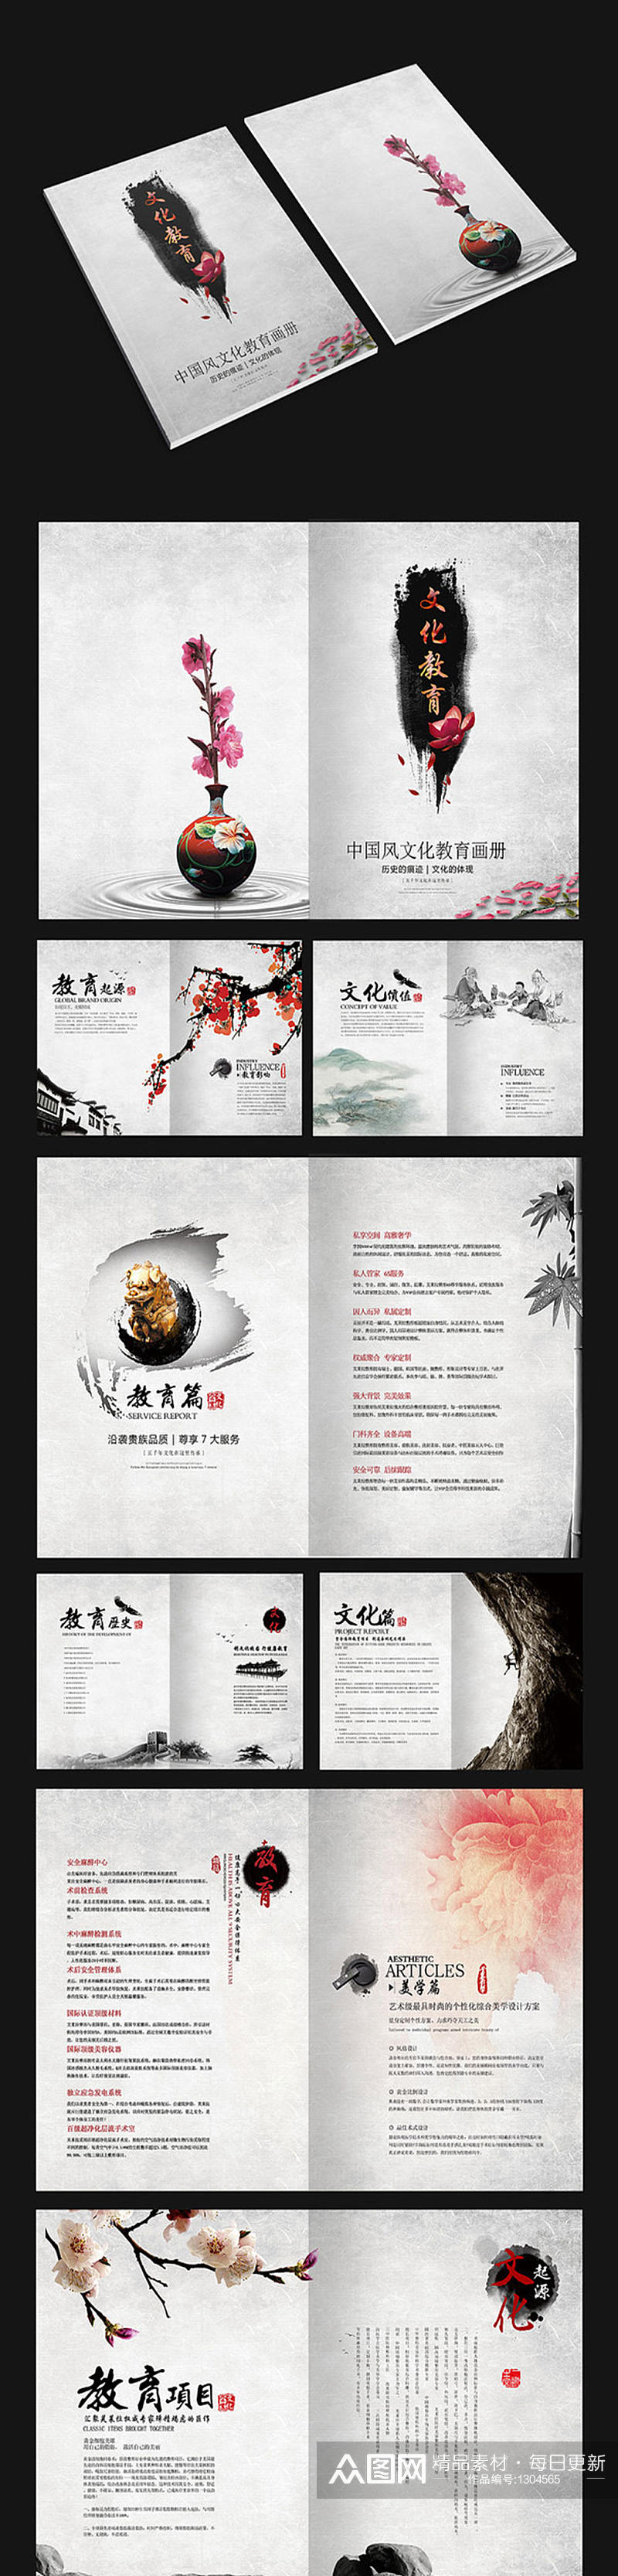 中国风教育画册设计素材